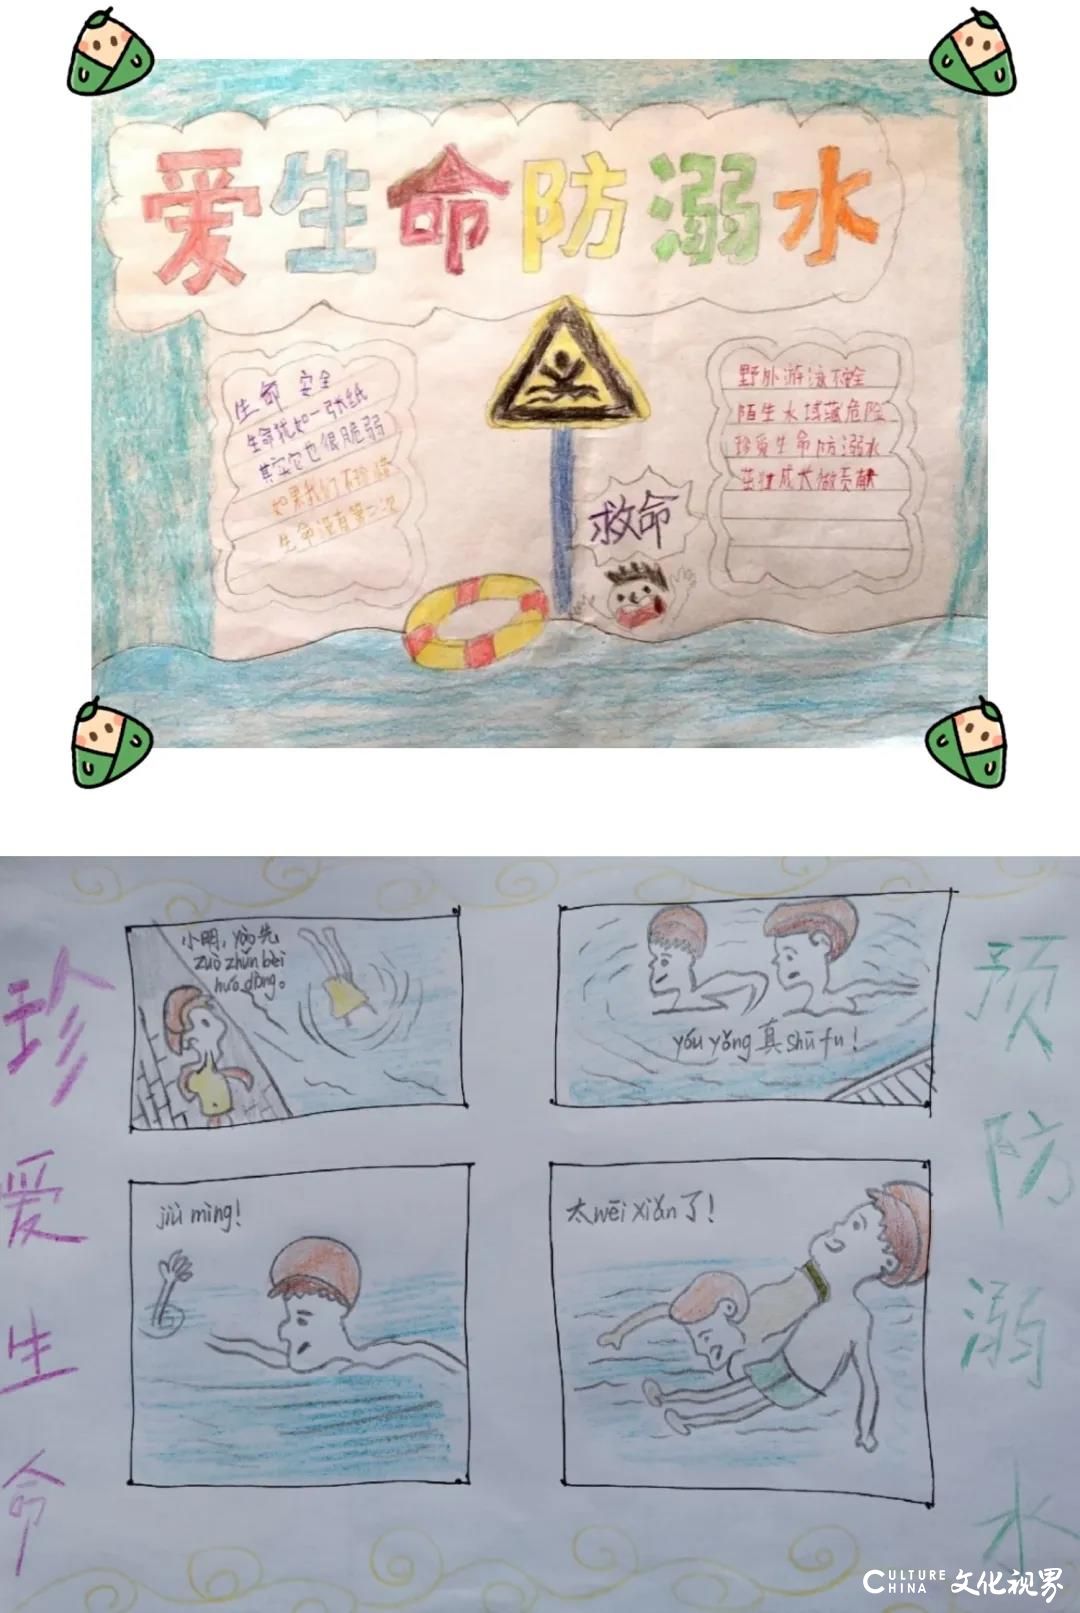 防溺水  筑安全  爱生命——济南高新区汉峪小学一（4）中队以生动活泼的形式进行安全教育